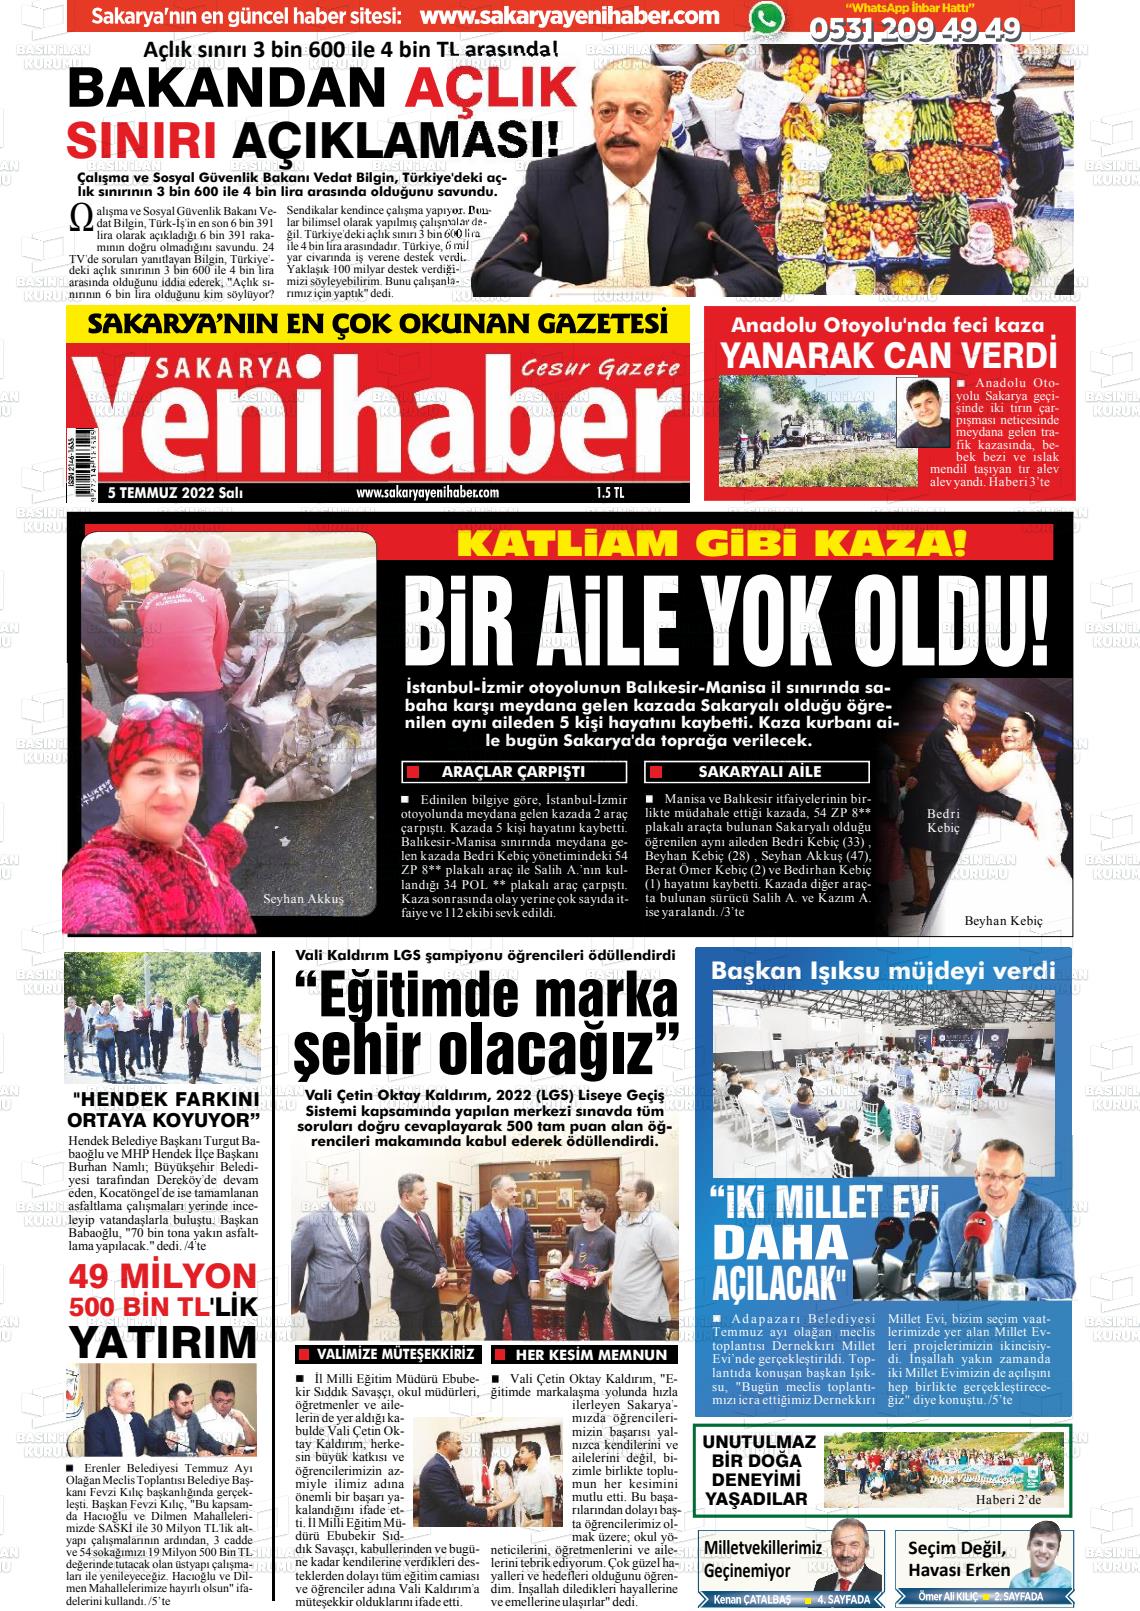 05 Temmuz 2022 Sakarya Yeni Haber Gazete Manşeti